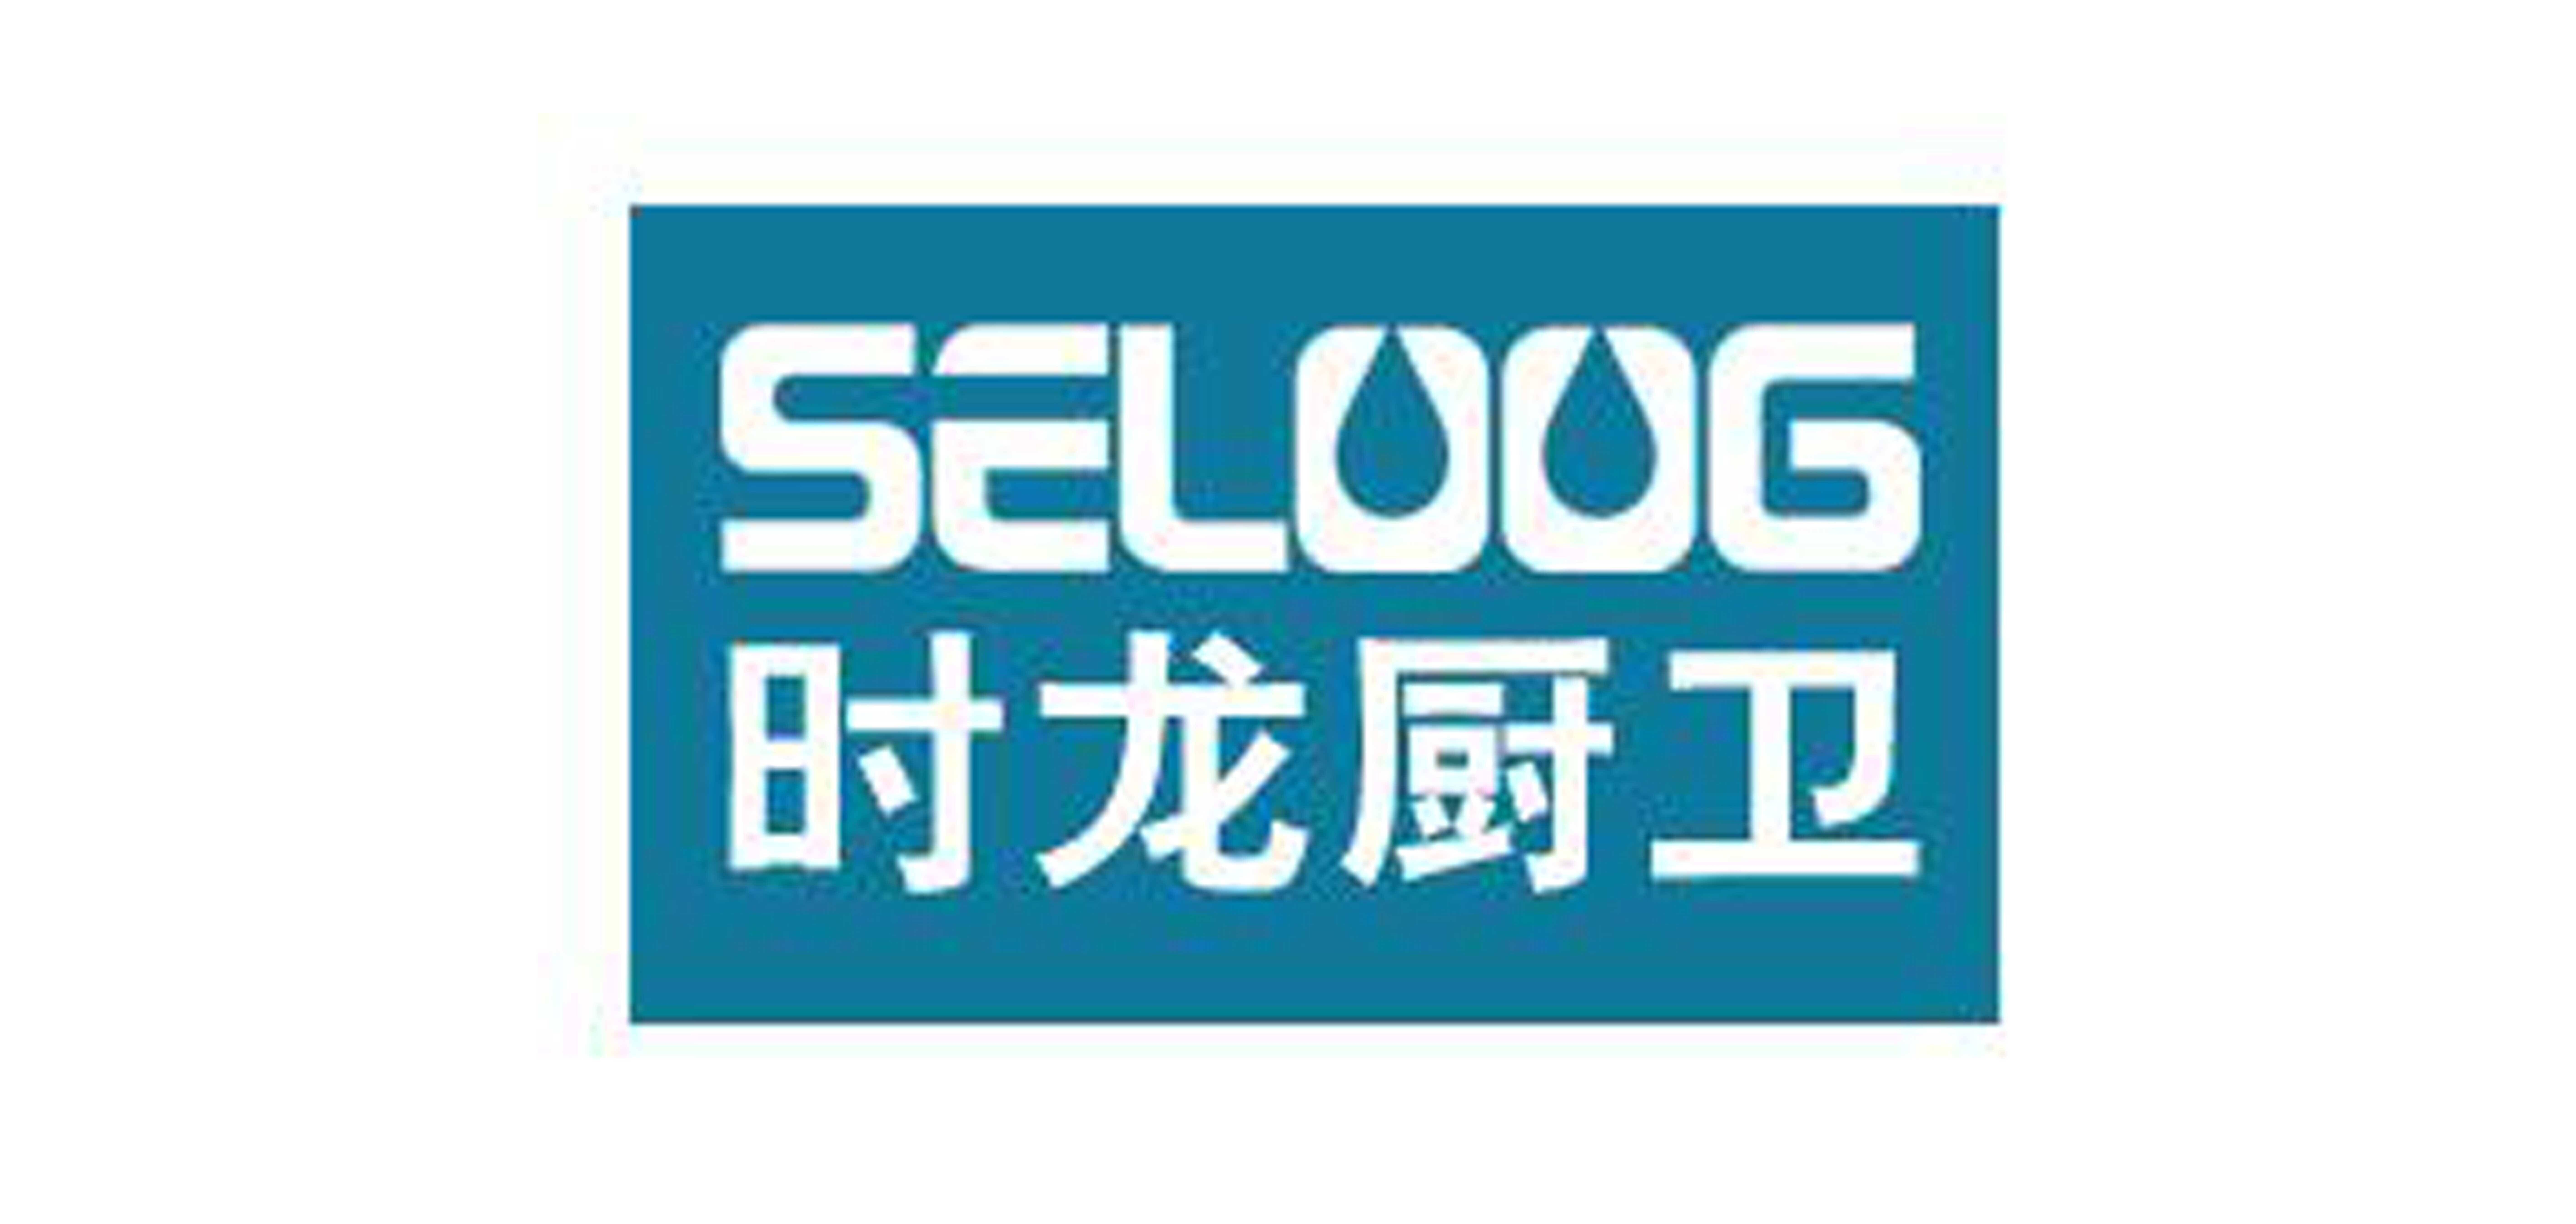 时龙SELOOG品牌官方网站